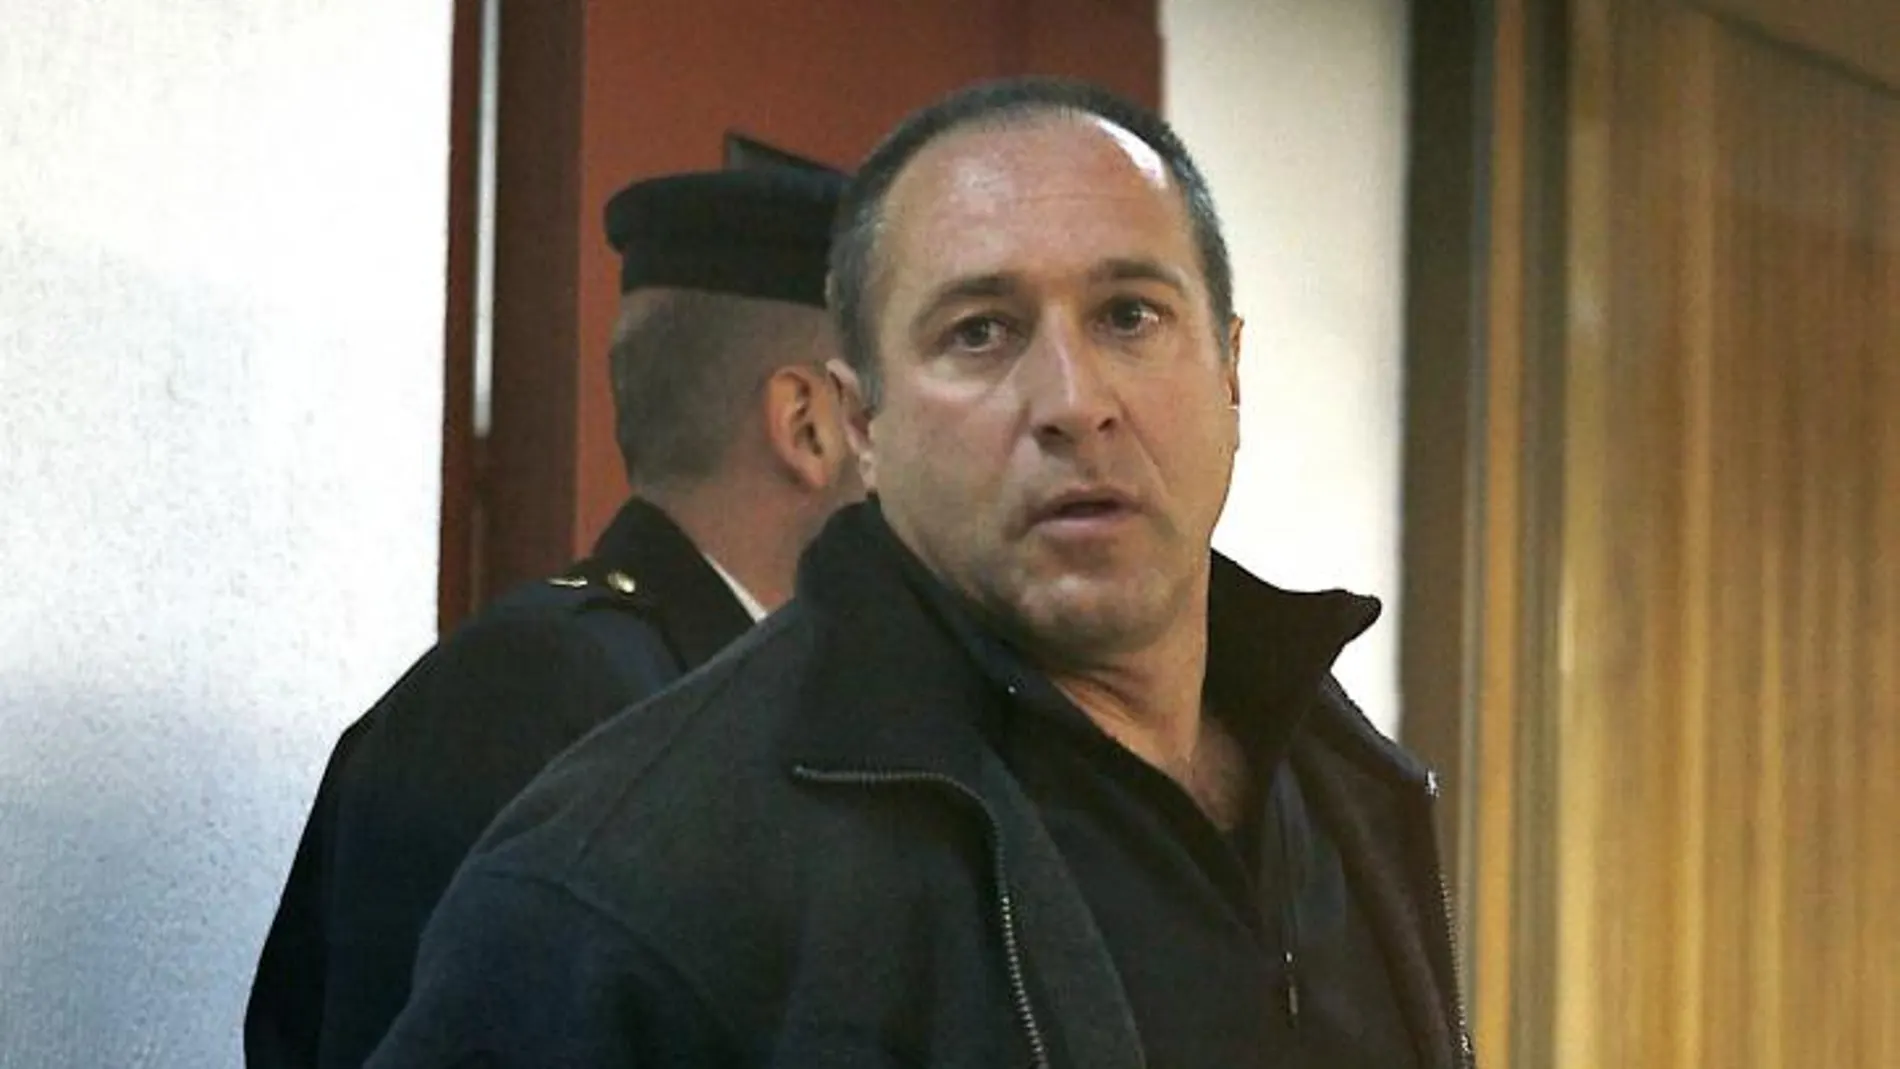 Henri Parot, en el juicio celebrado en 2007 por el que fue condenado a once años de cárcel por proponer atentados a la cúpula de ETA desde prisión